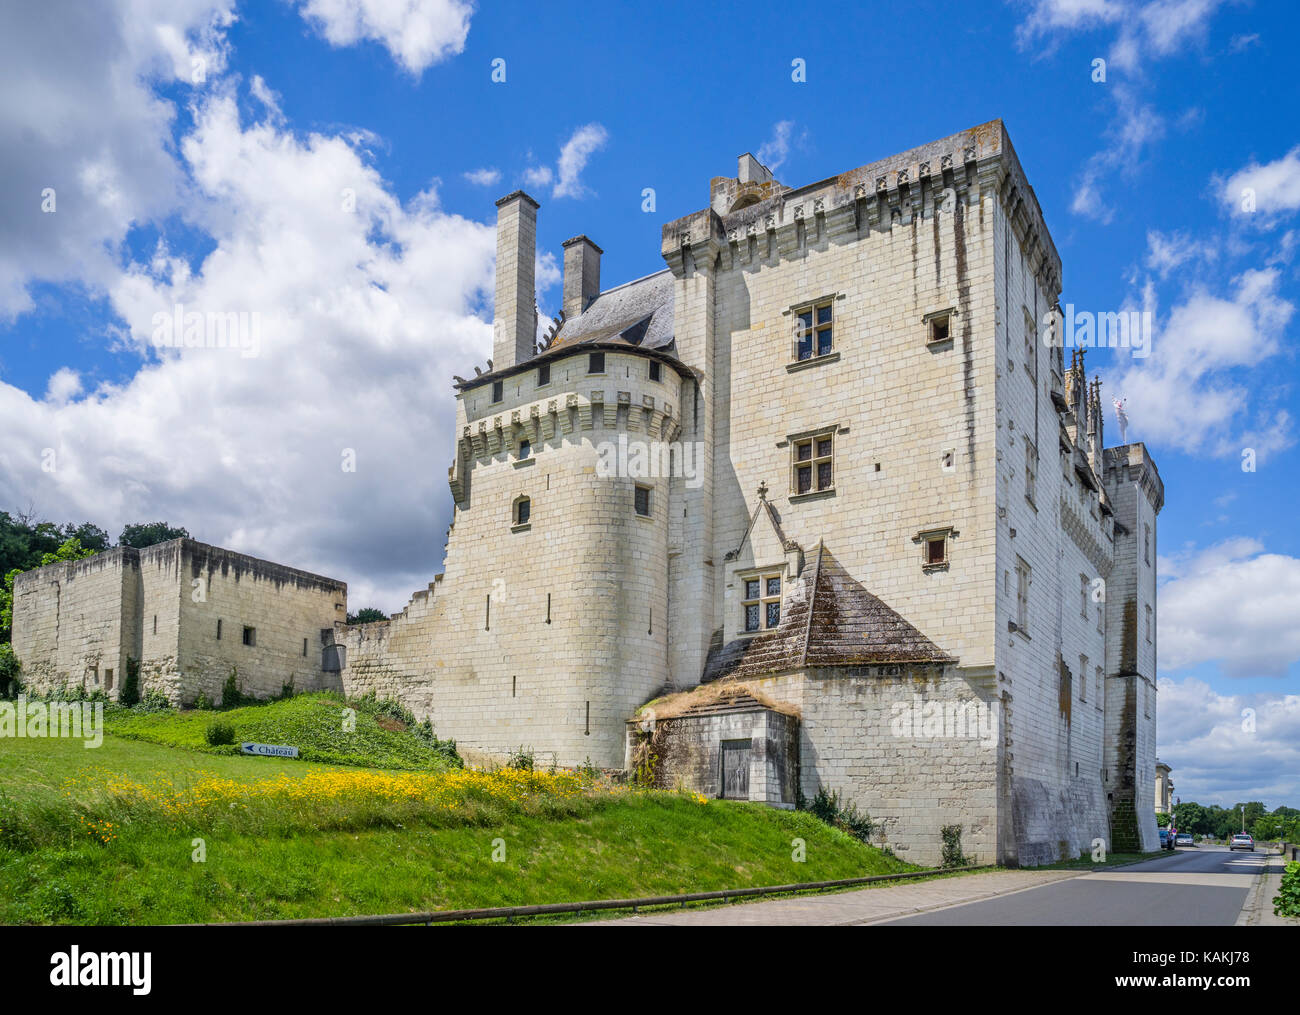 France, Pays de la Loire, Maine-et-Loire department, Montsoreau, view of the Renaissance style castle Château de Montsoreau Stock Photo